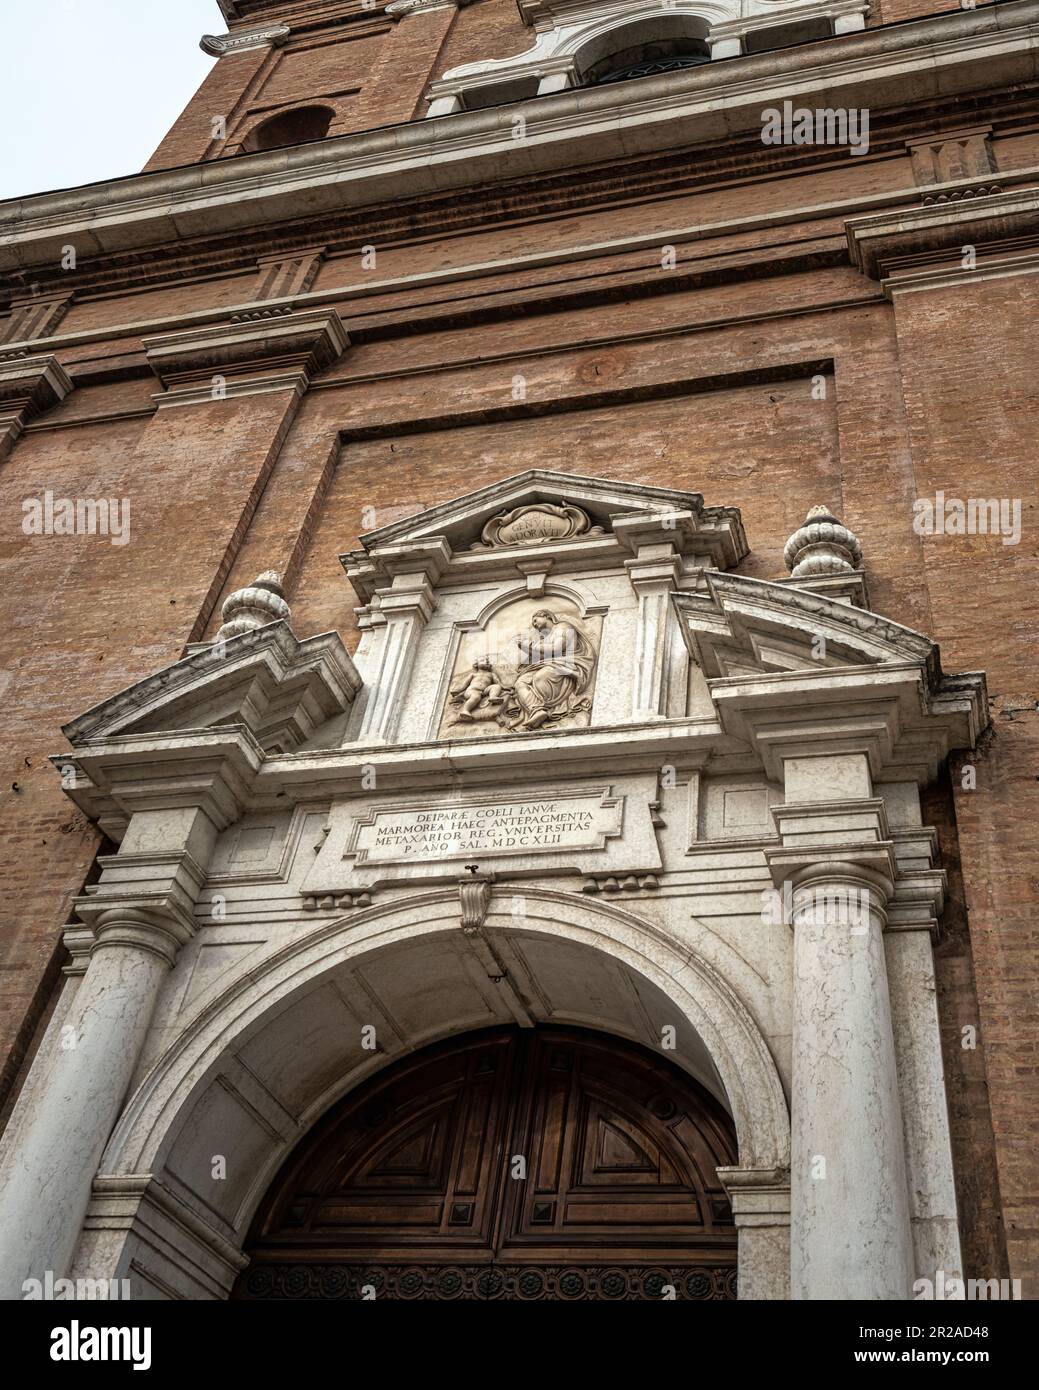 Portale decorato con marmi e stucchi bianchi della facciata della Basilica della Beata Vergine della Ghiara. Reggio Emilia, Emilia Romagna, Italia Foto Stock